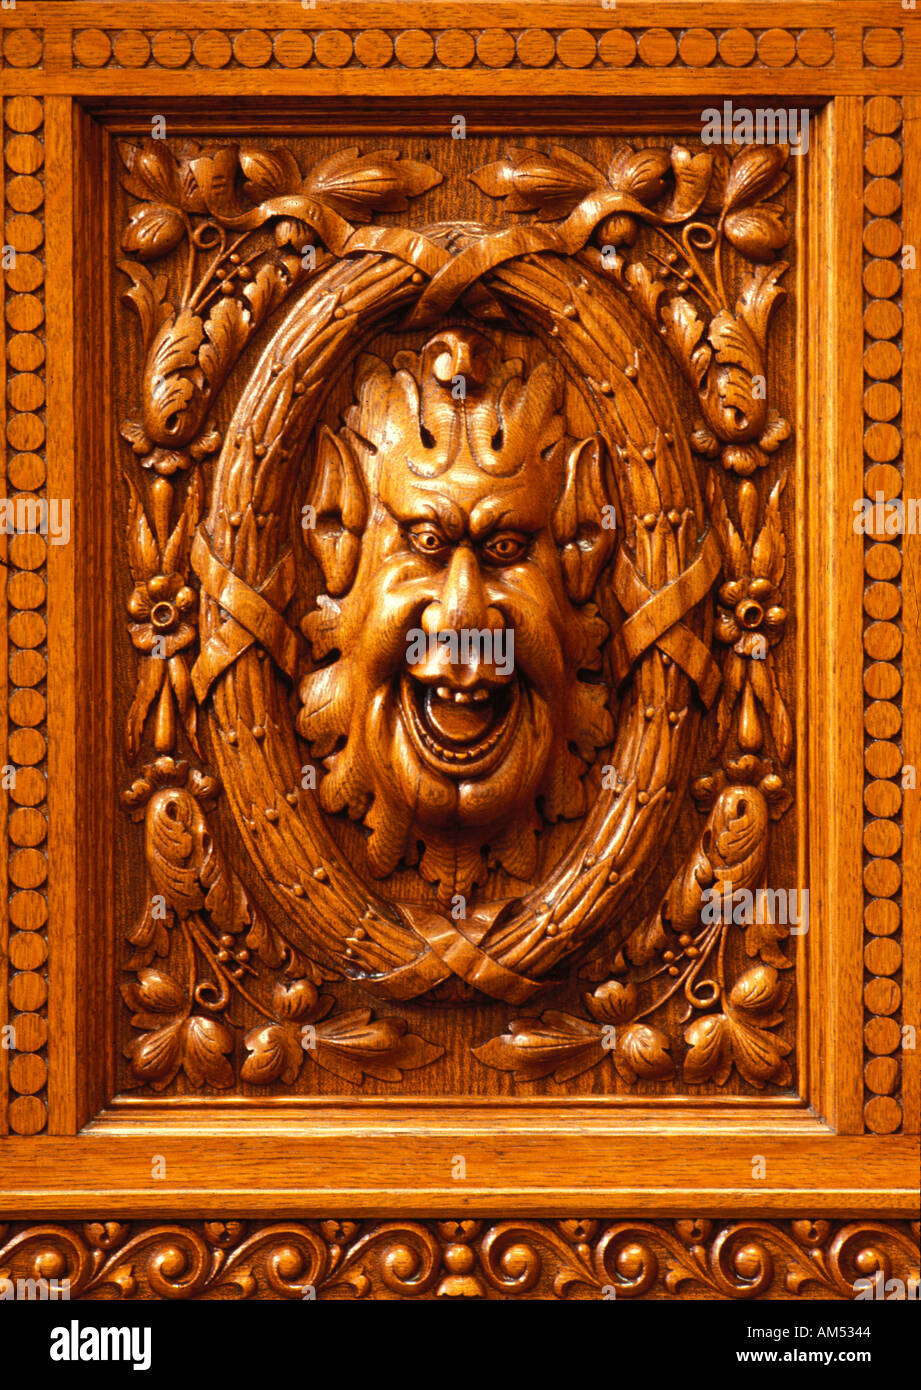 Comique et humoristique visage sculpté en bois panneau bois bas relief Banque D'Images